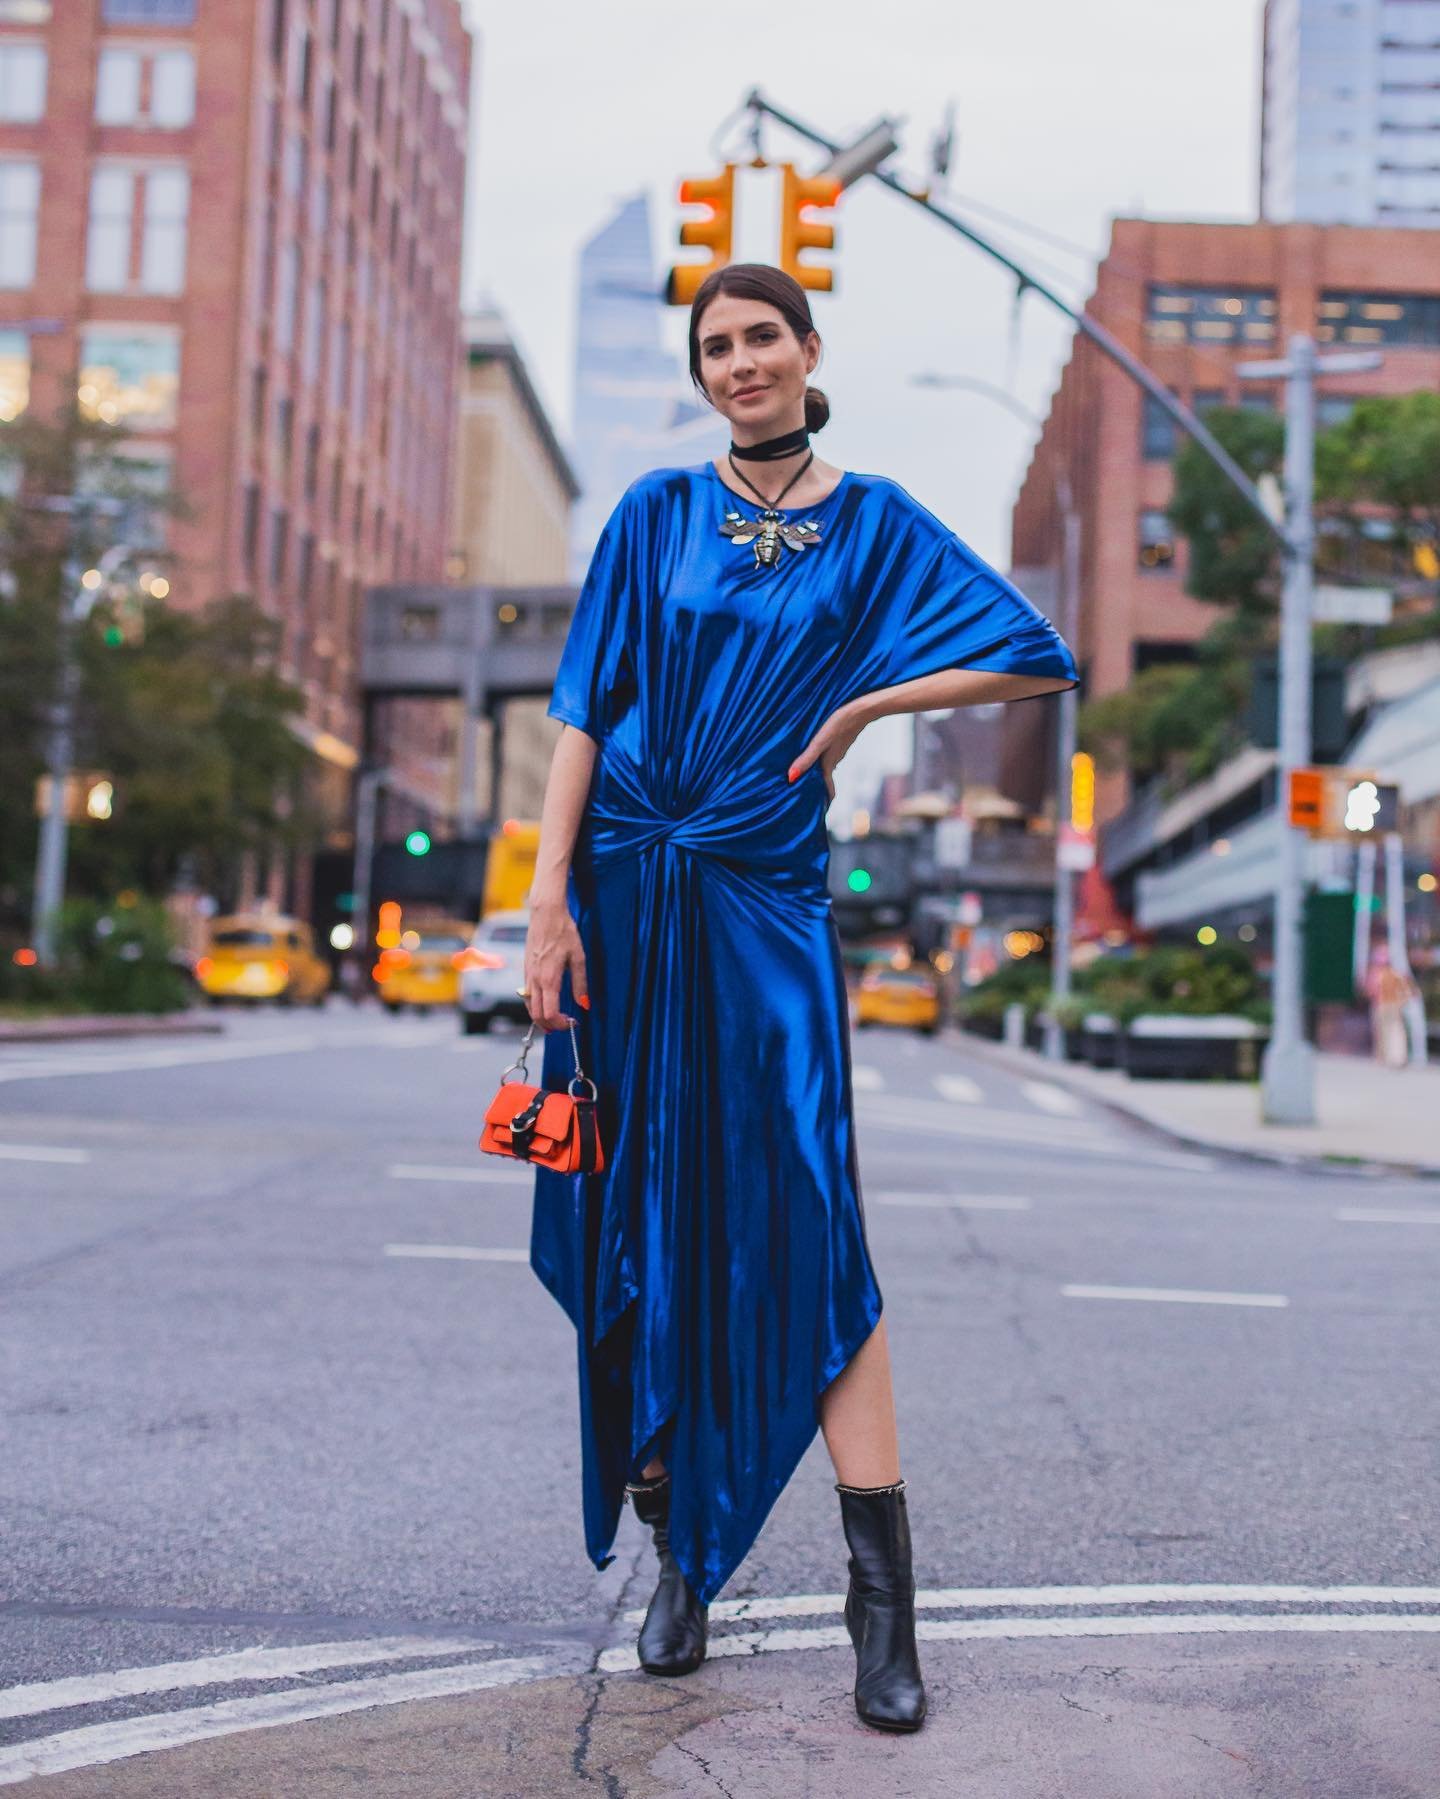 Manuela Bordasch - semana de moda - semana de moda - Verão - Nova York - https://stealthelook.com.br